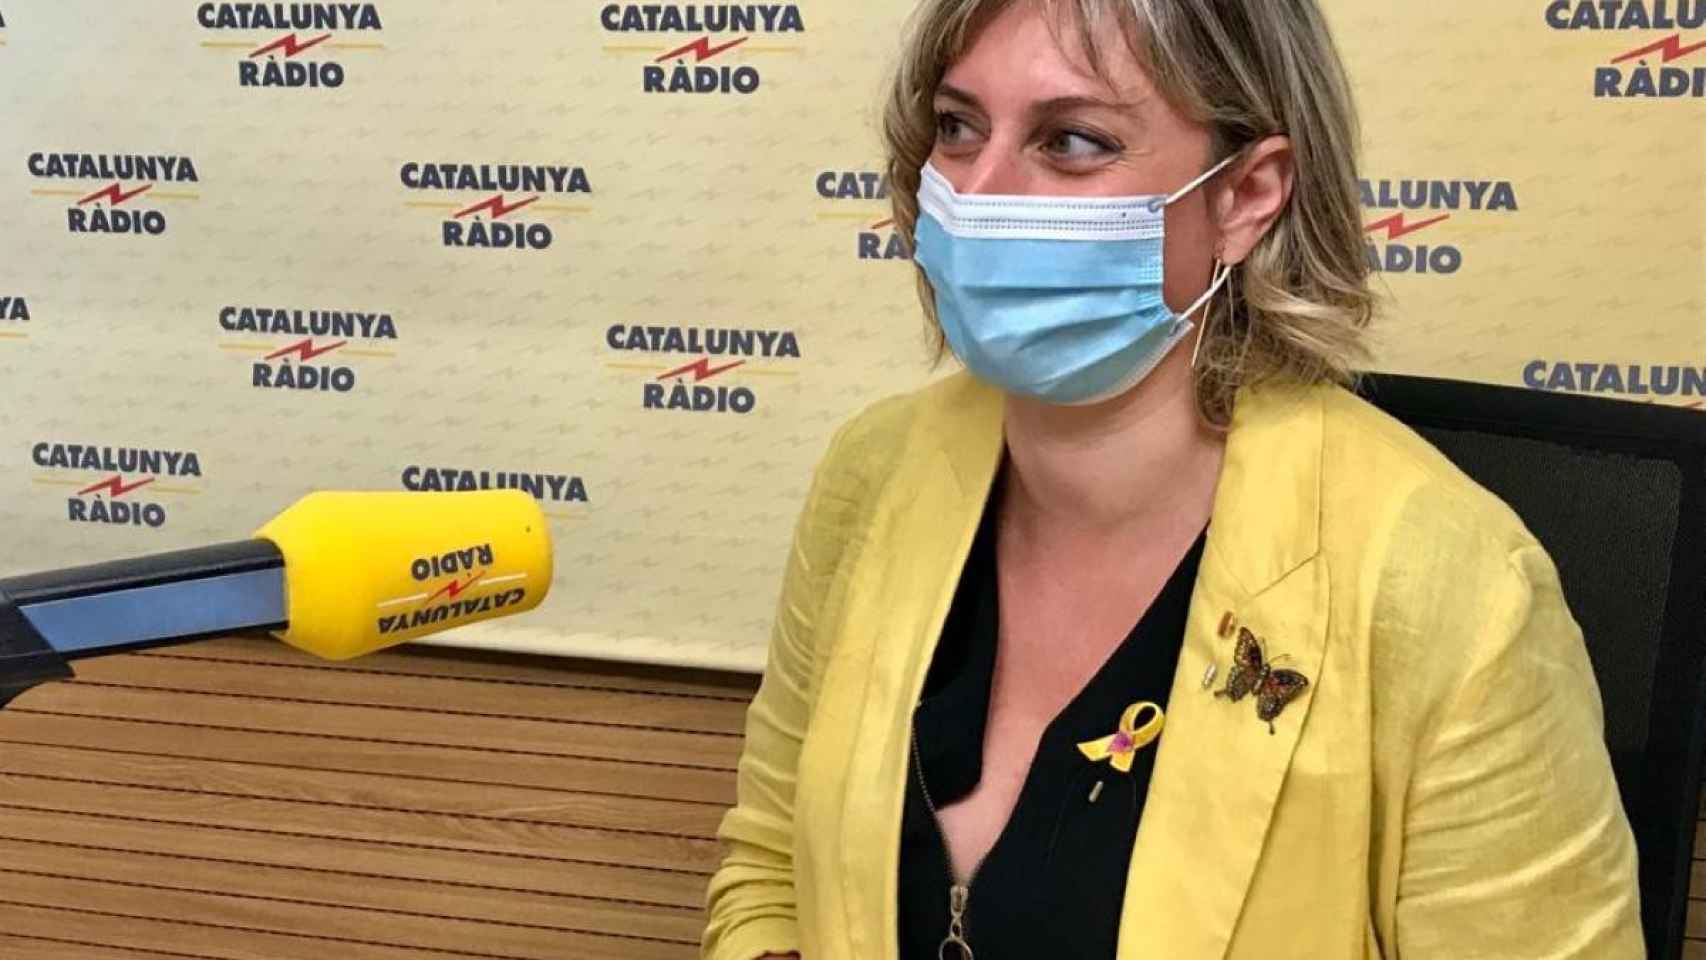 La consellera de Salud, Alba Vergès, durante su entrevista en Catalunya Ràdio / CCMA